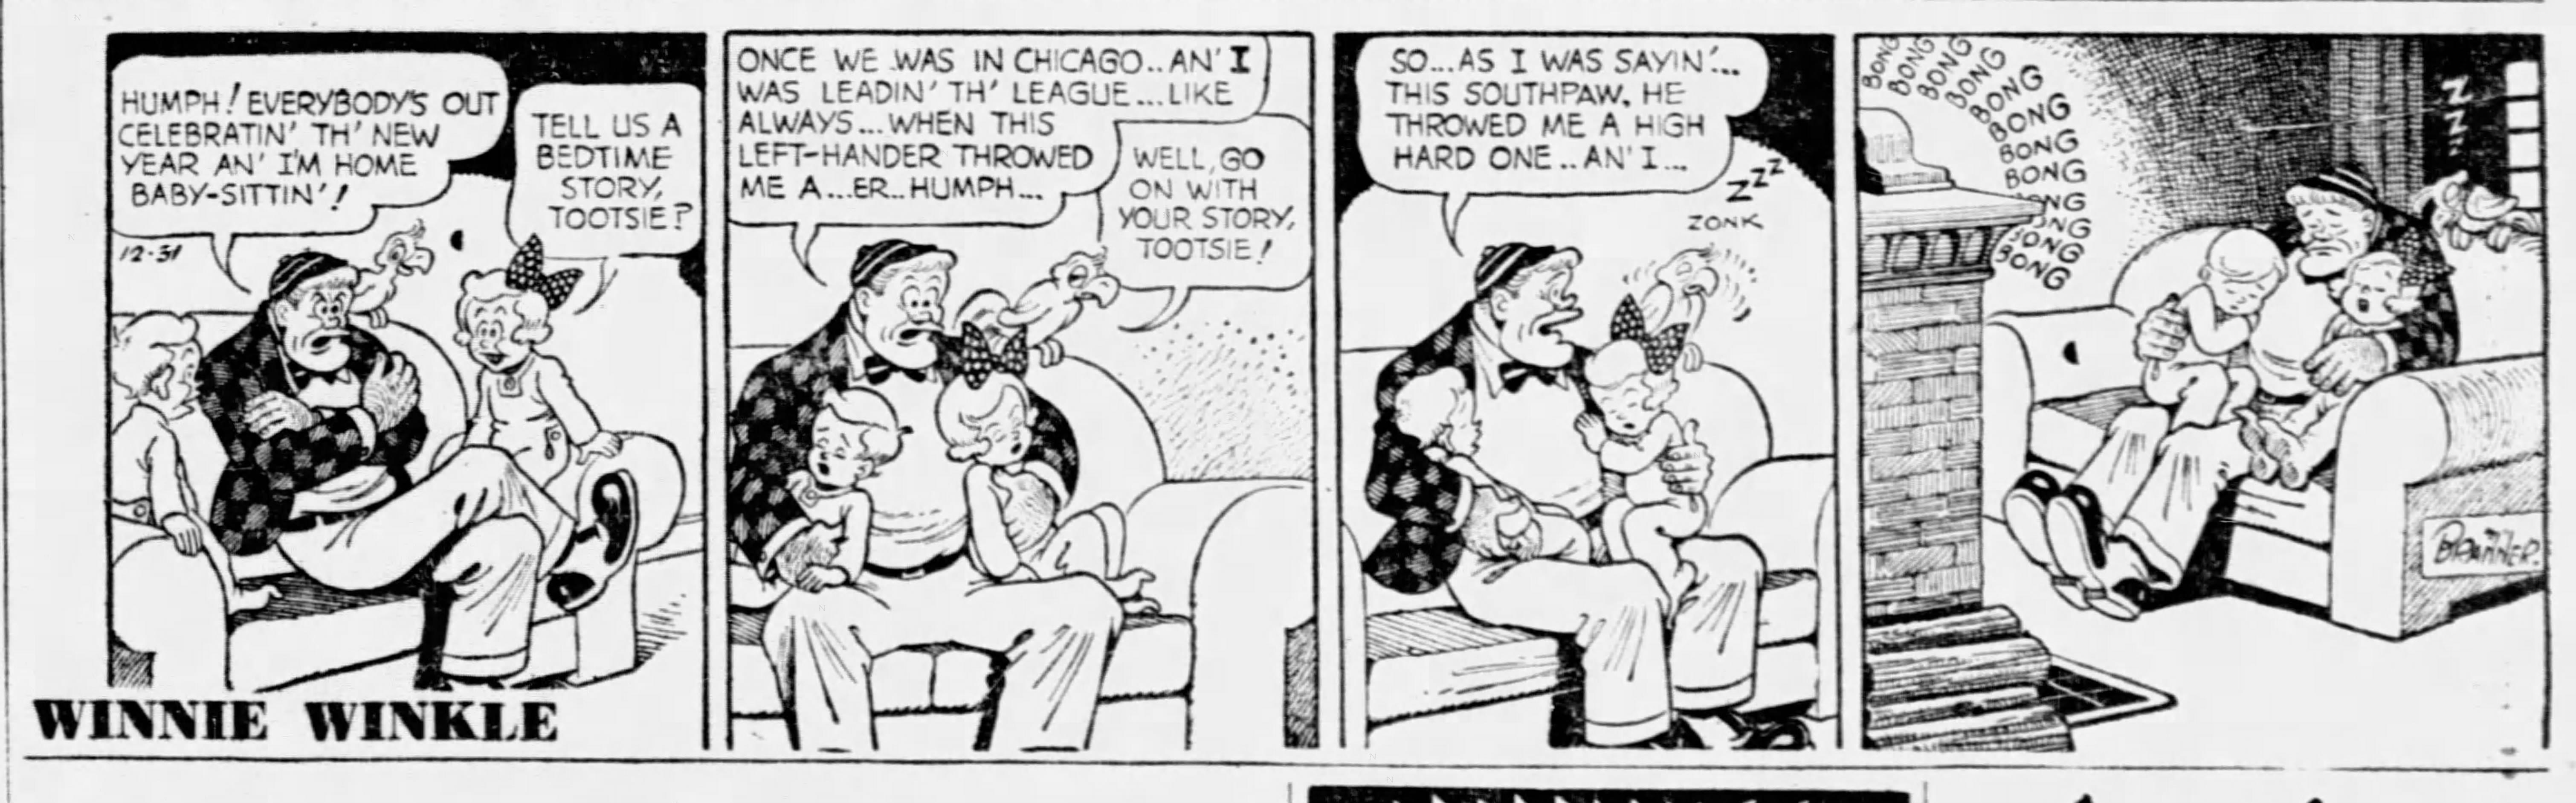 Winnie Winkle, December 31, 1952